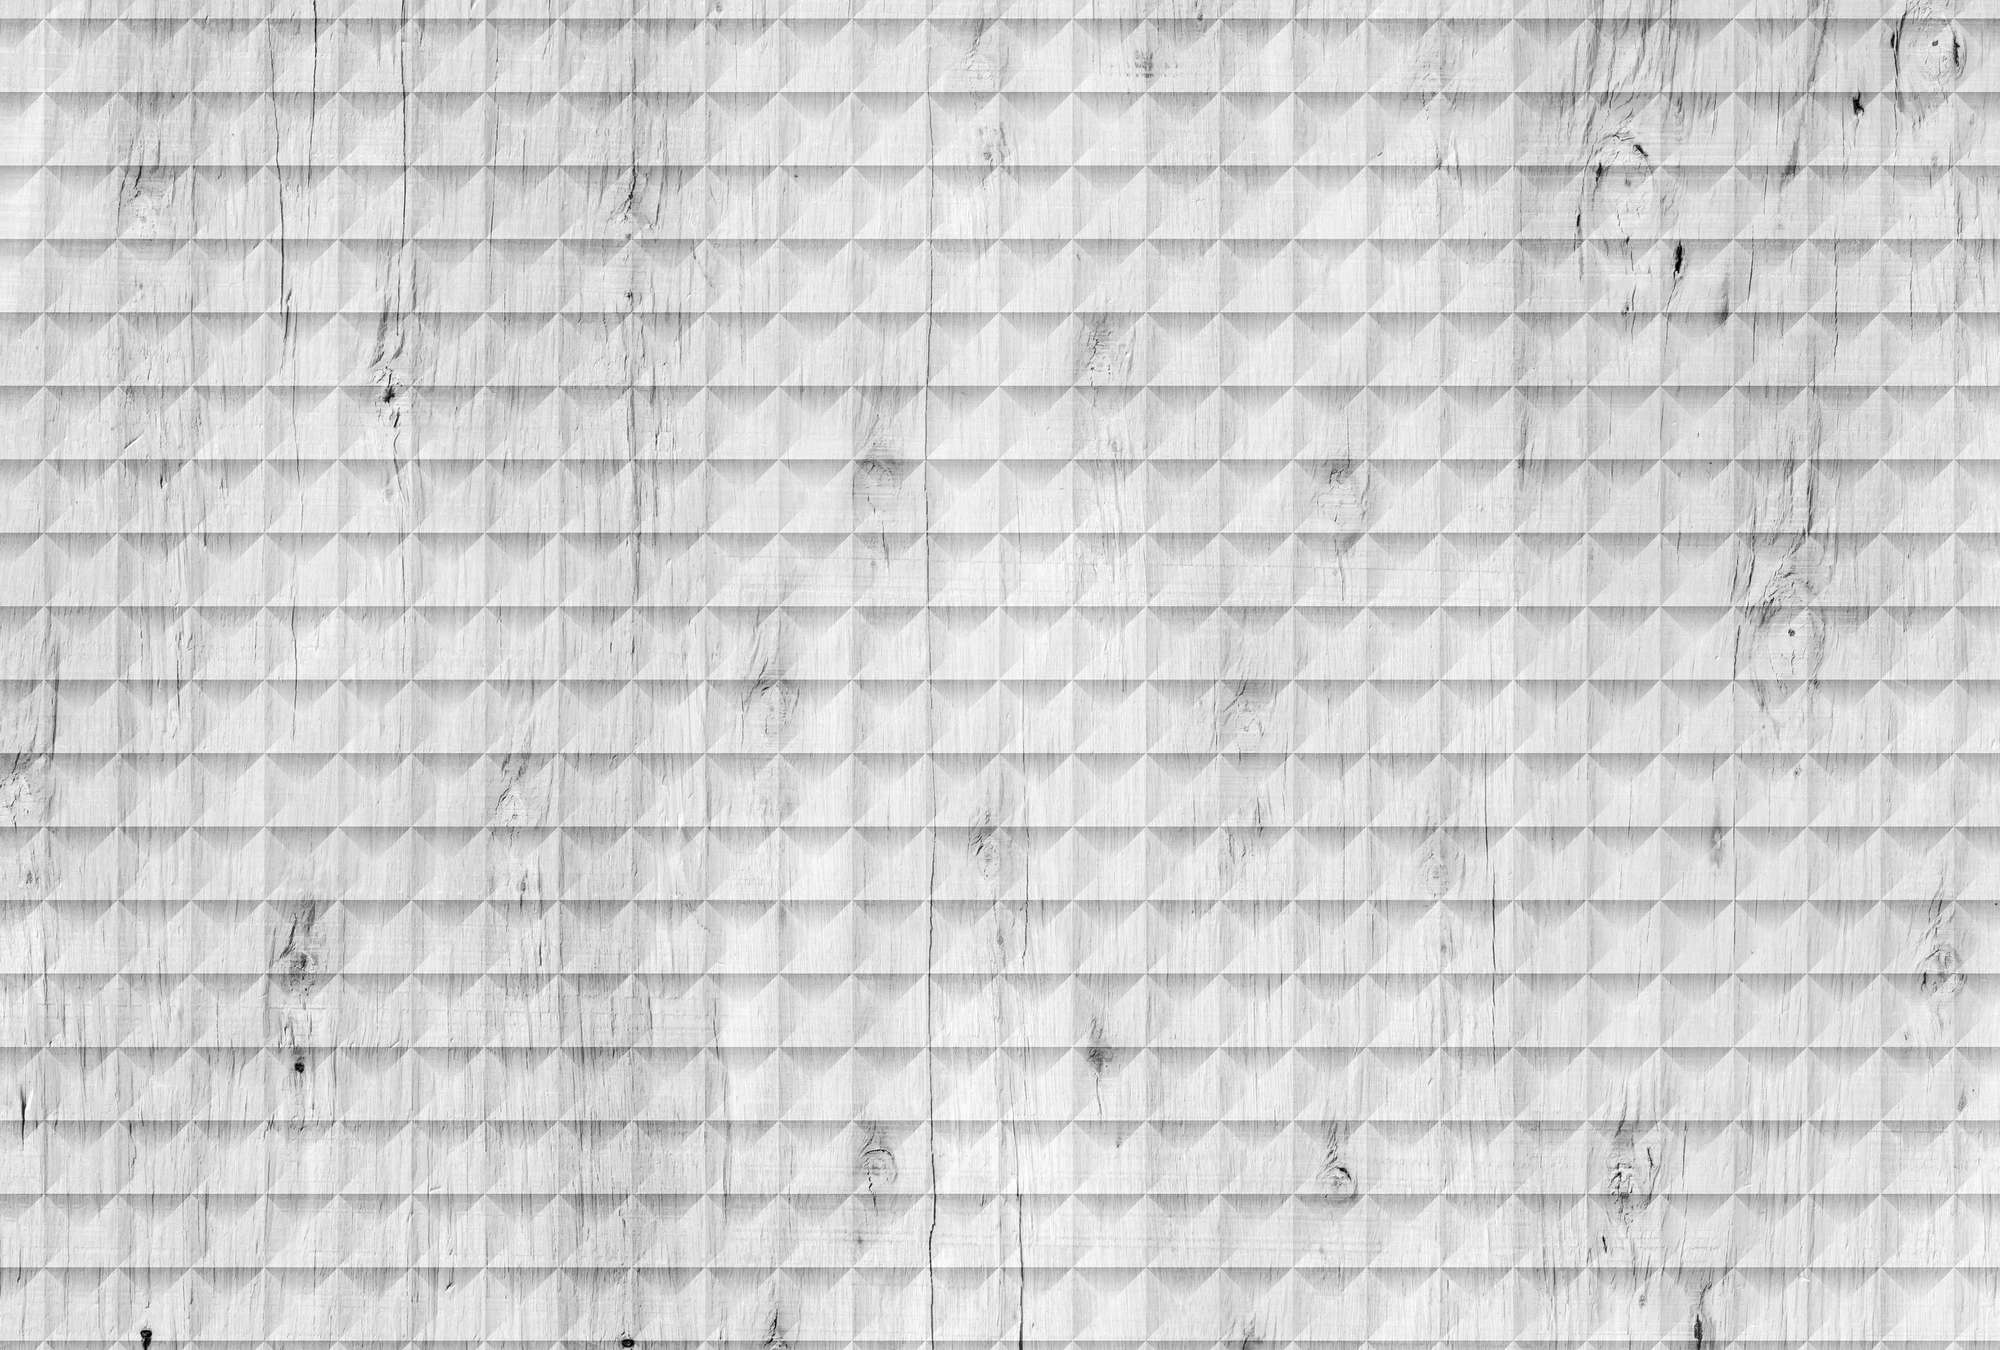             Weiße Holz Fototapete, Maserung & geometrischem Muster – Weiß, Grau, Schwarz
        